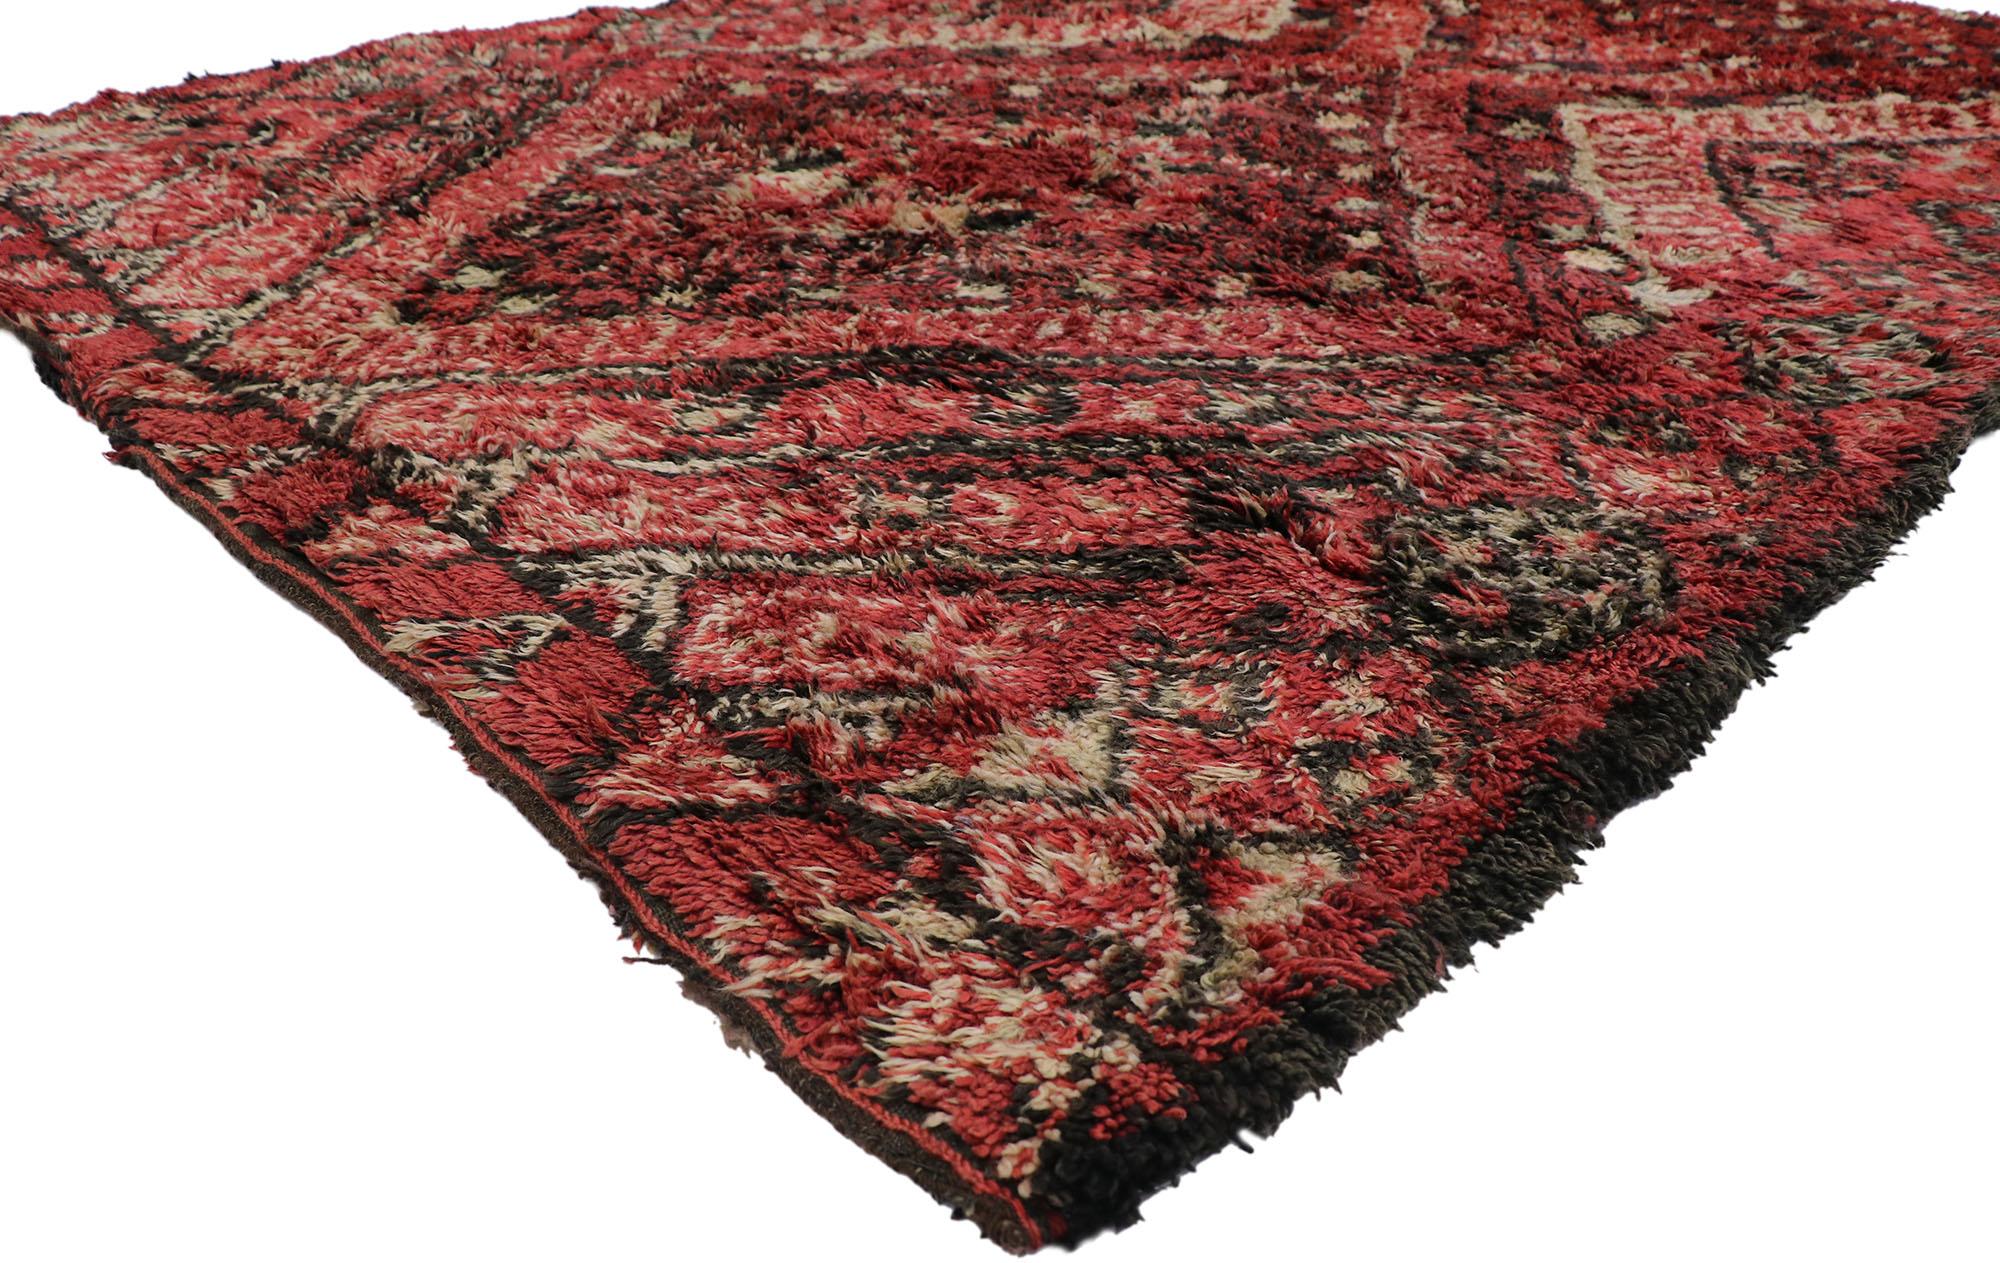 21194 Vintage Berber Beni M'Guild Moroccan rug with Tribal Style 07'04 x 10'11. Avec son design expressif et audacieux, ses détails et sa texture incroyables, ce tapis berbère vintage Beni M'Guild en laine nouée à la main est une vision captivante